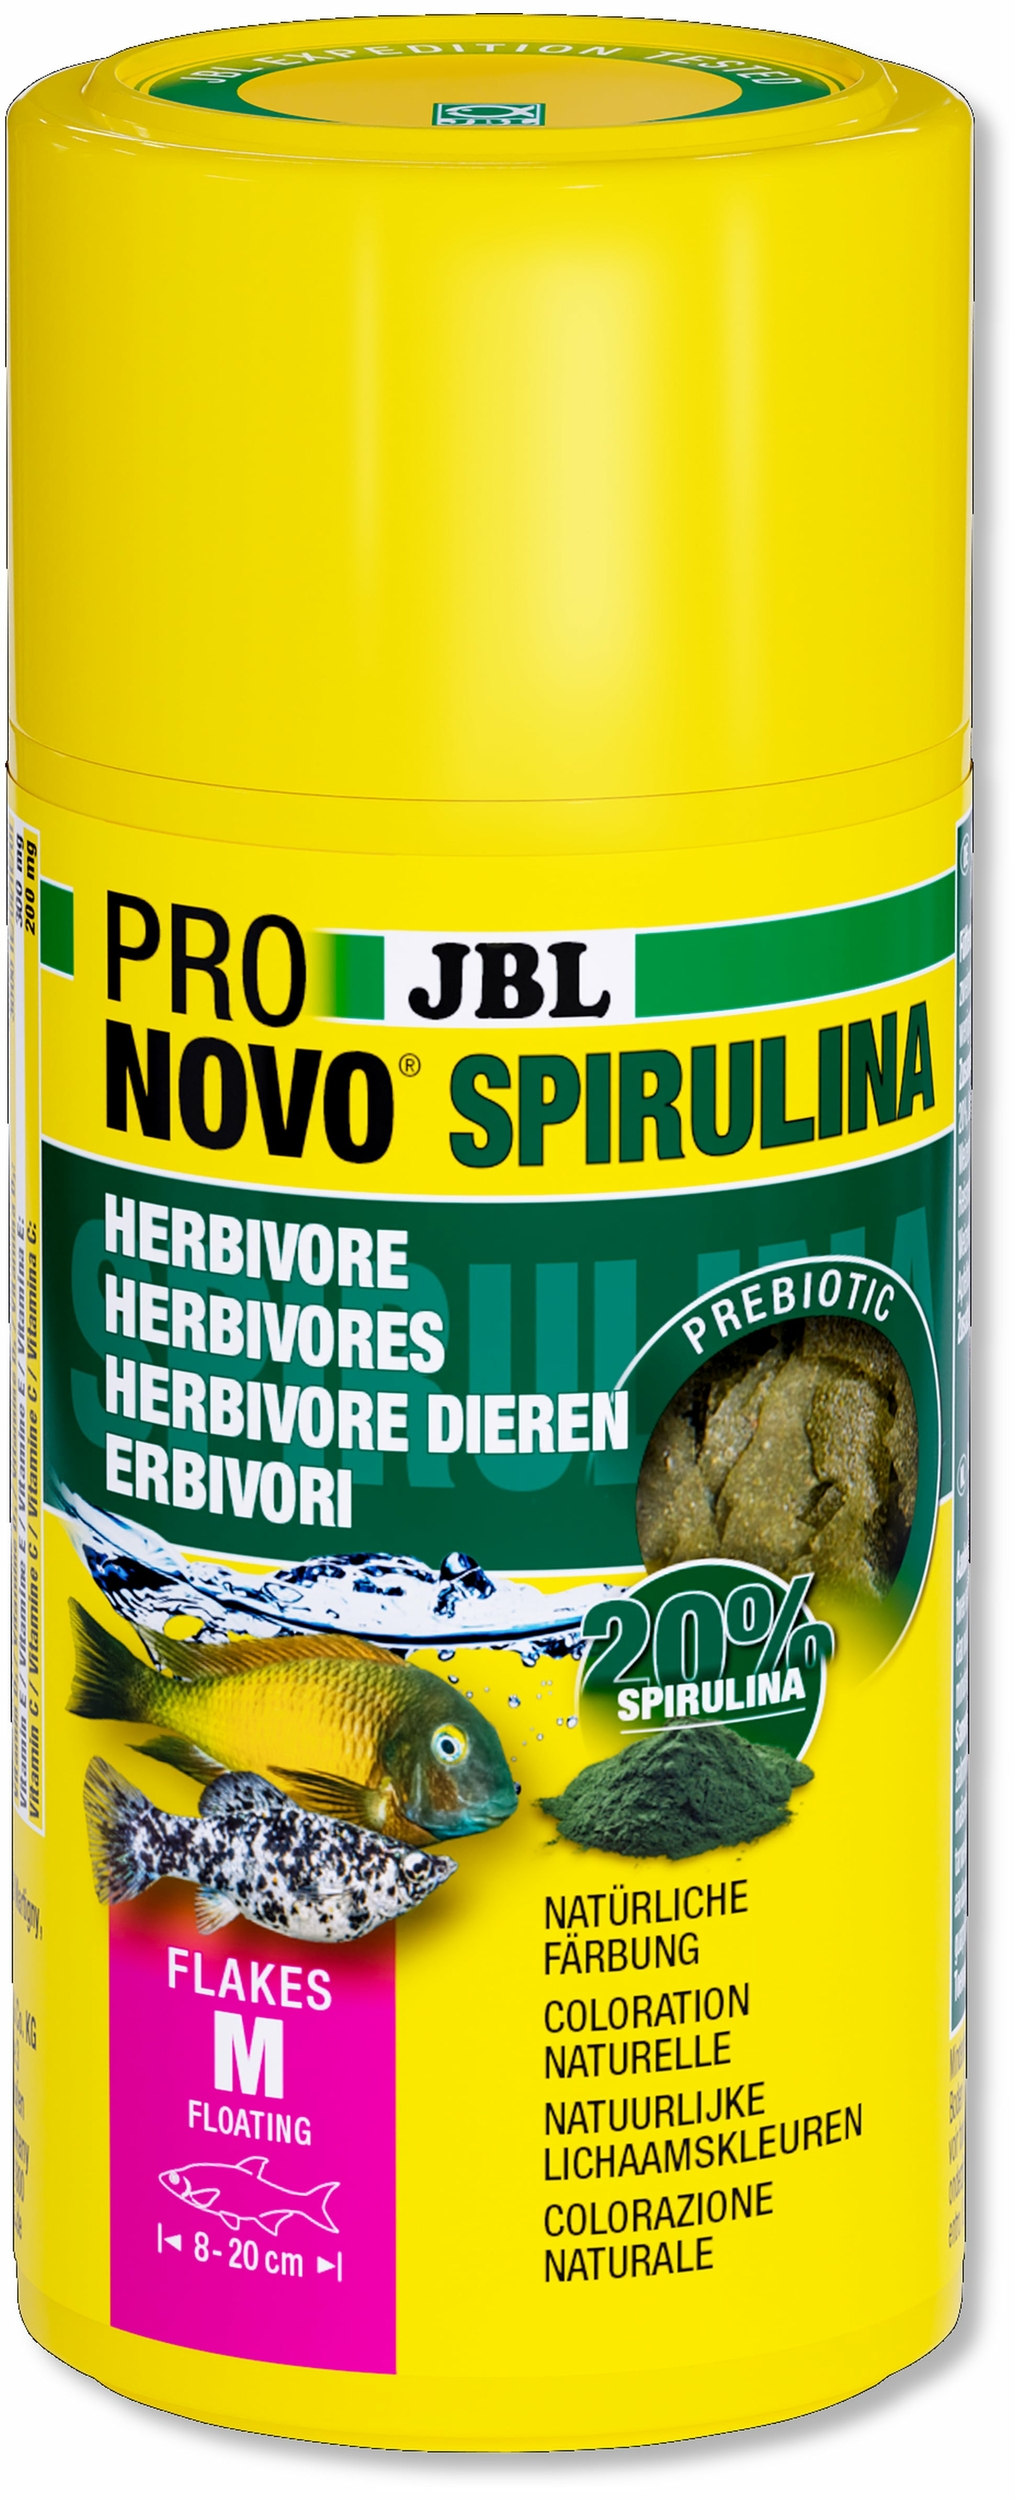 JBL ProNovo Spirulina Flakes M 100 ml nourriture en flocons à base de spiruline pour tous poissons d\'aquarium de 8 à 20 cm